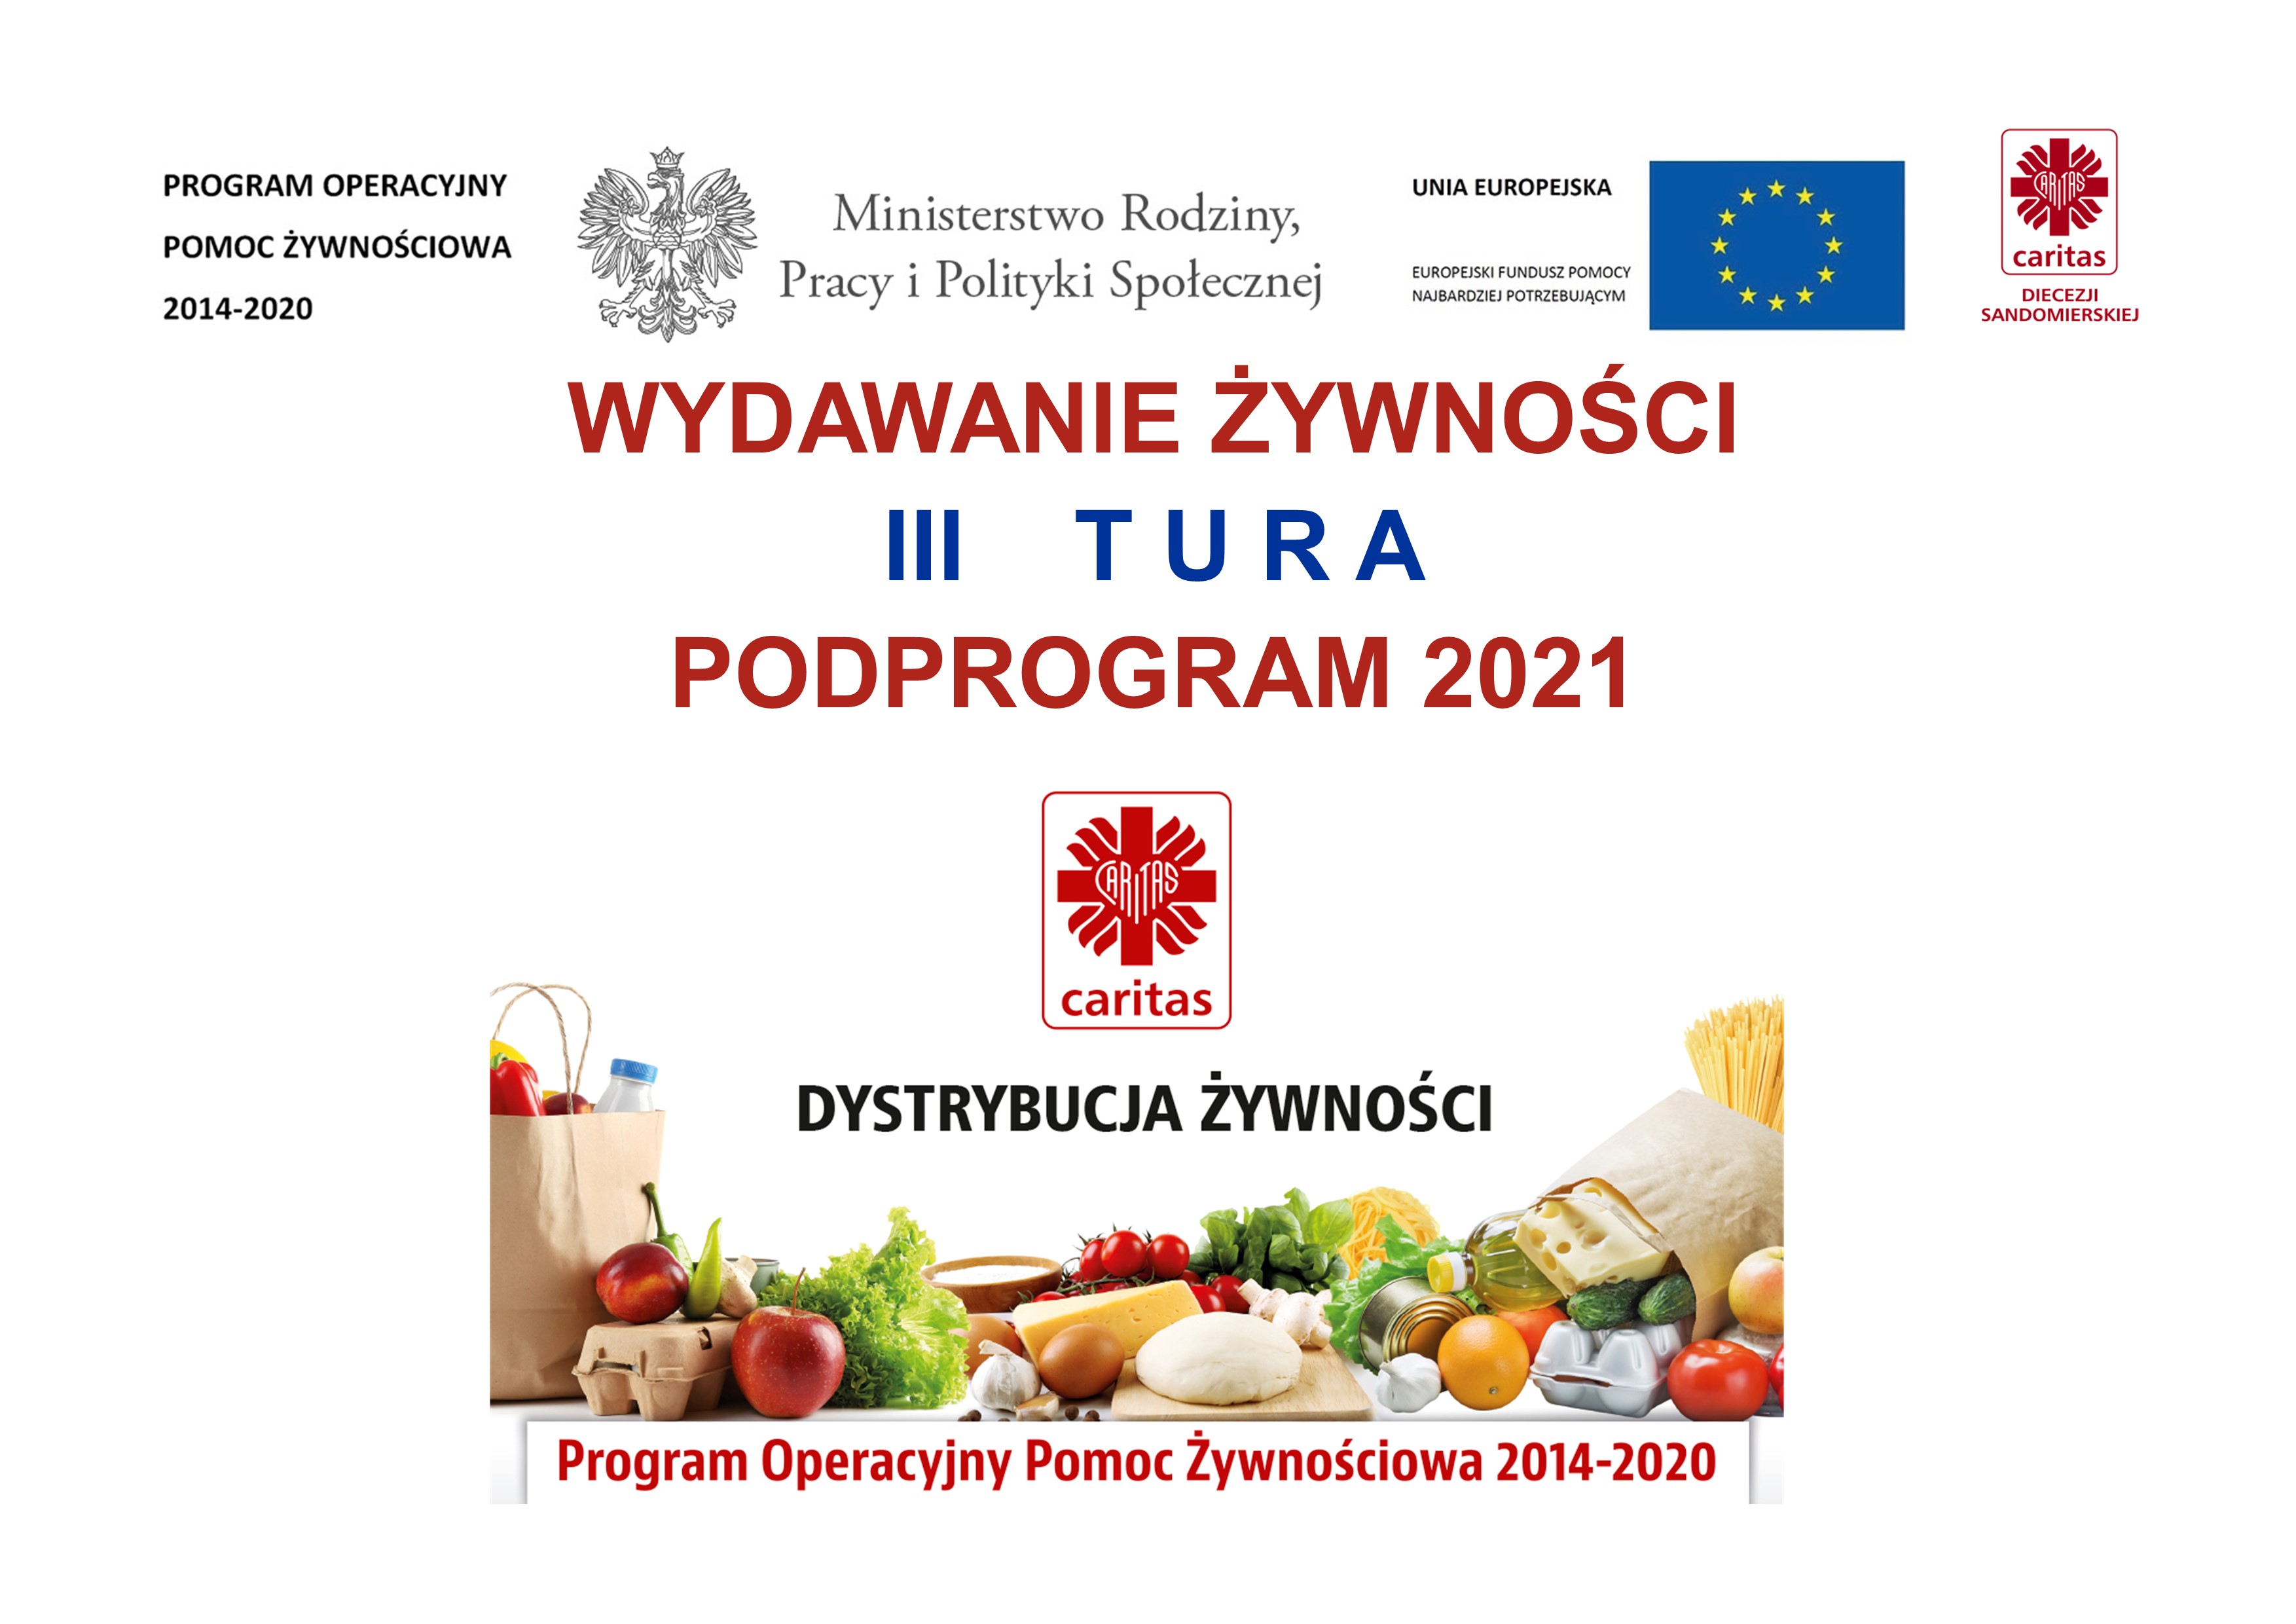 III Tura wydawania żywności w ramach programu w ramach programu Program Operacyjny Pomoc Żywnościowa 2014-2020. Podprogram 2021